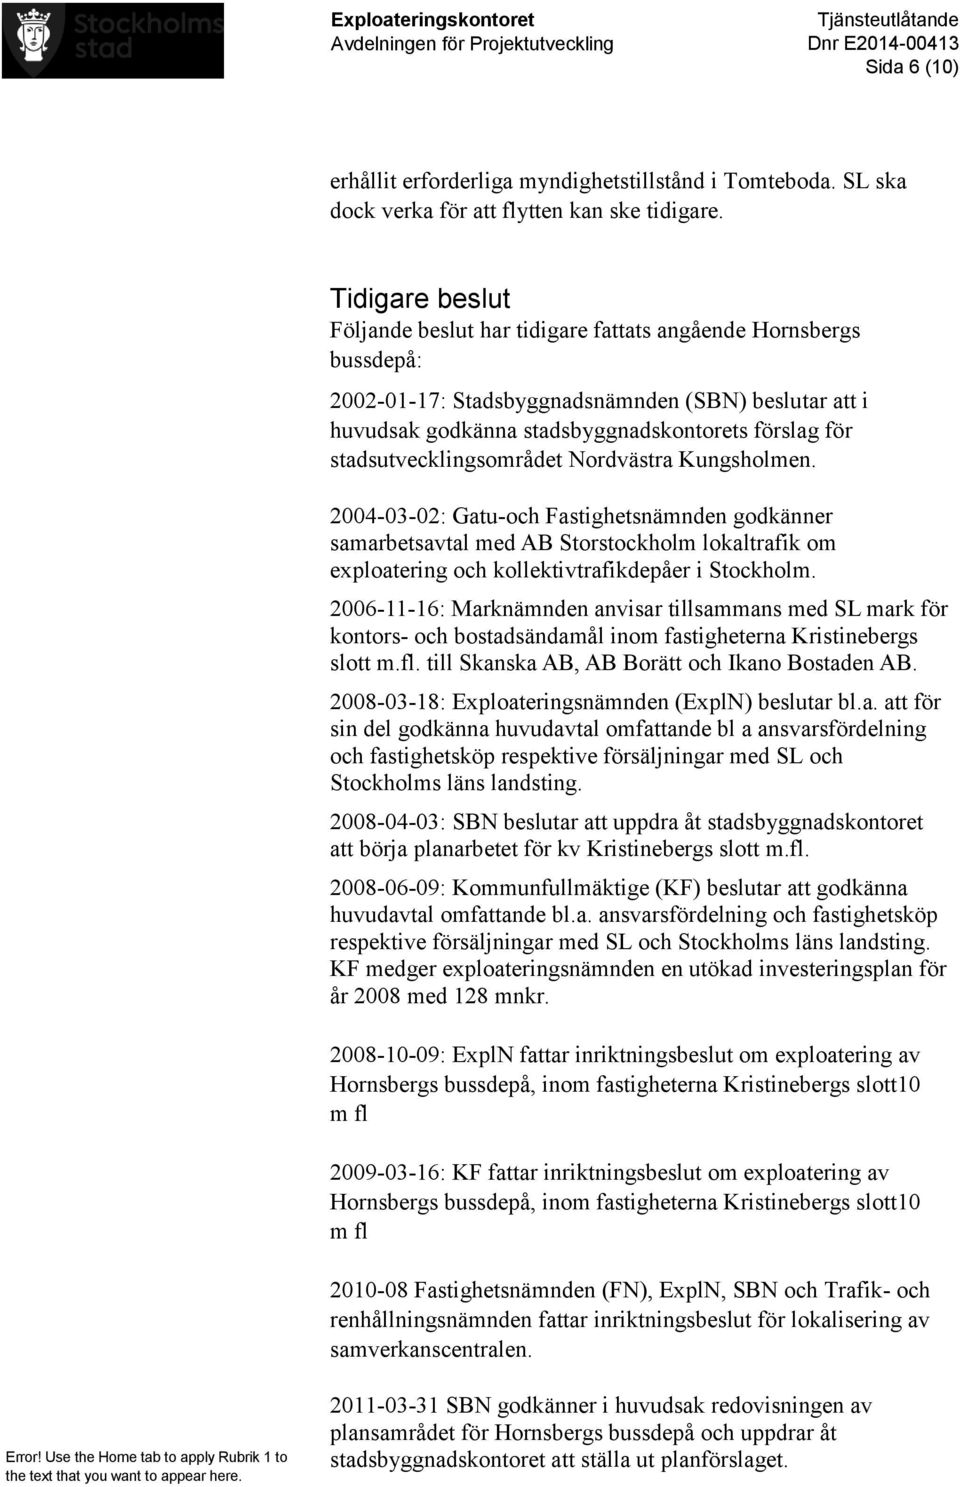 stadsutvecklingsområdet Nordvästra Kungsholmen. 2004-03-02: Gatu-och Fastighetsnämnden godkänner samarbetsavtal med AB Storstockholm lokaltrafik om exploatering och kollektivtrafikdepåer i Stockholm.